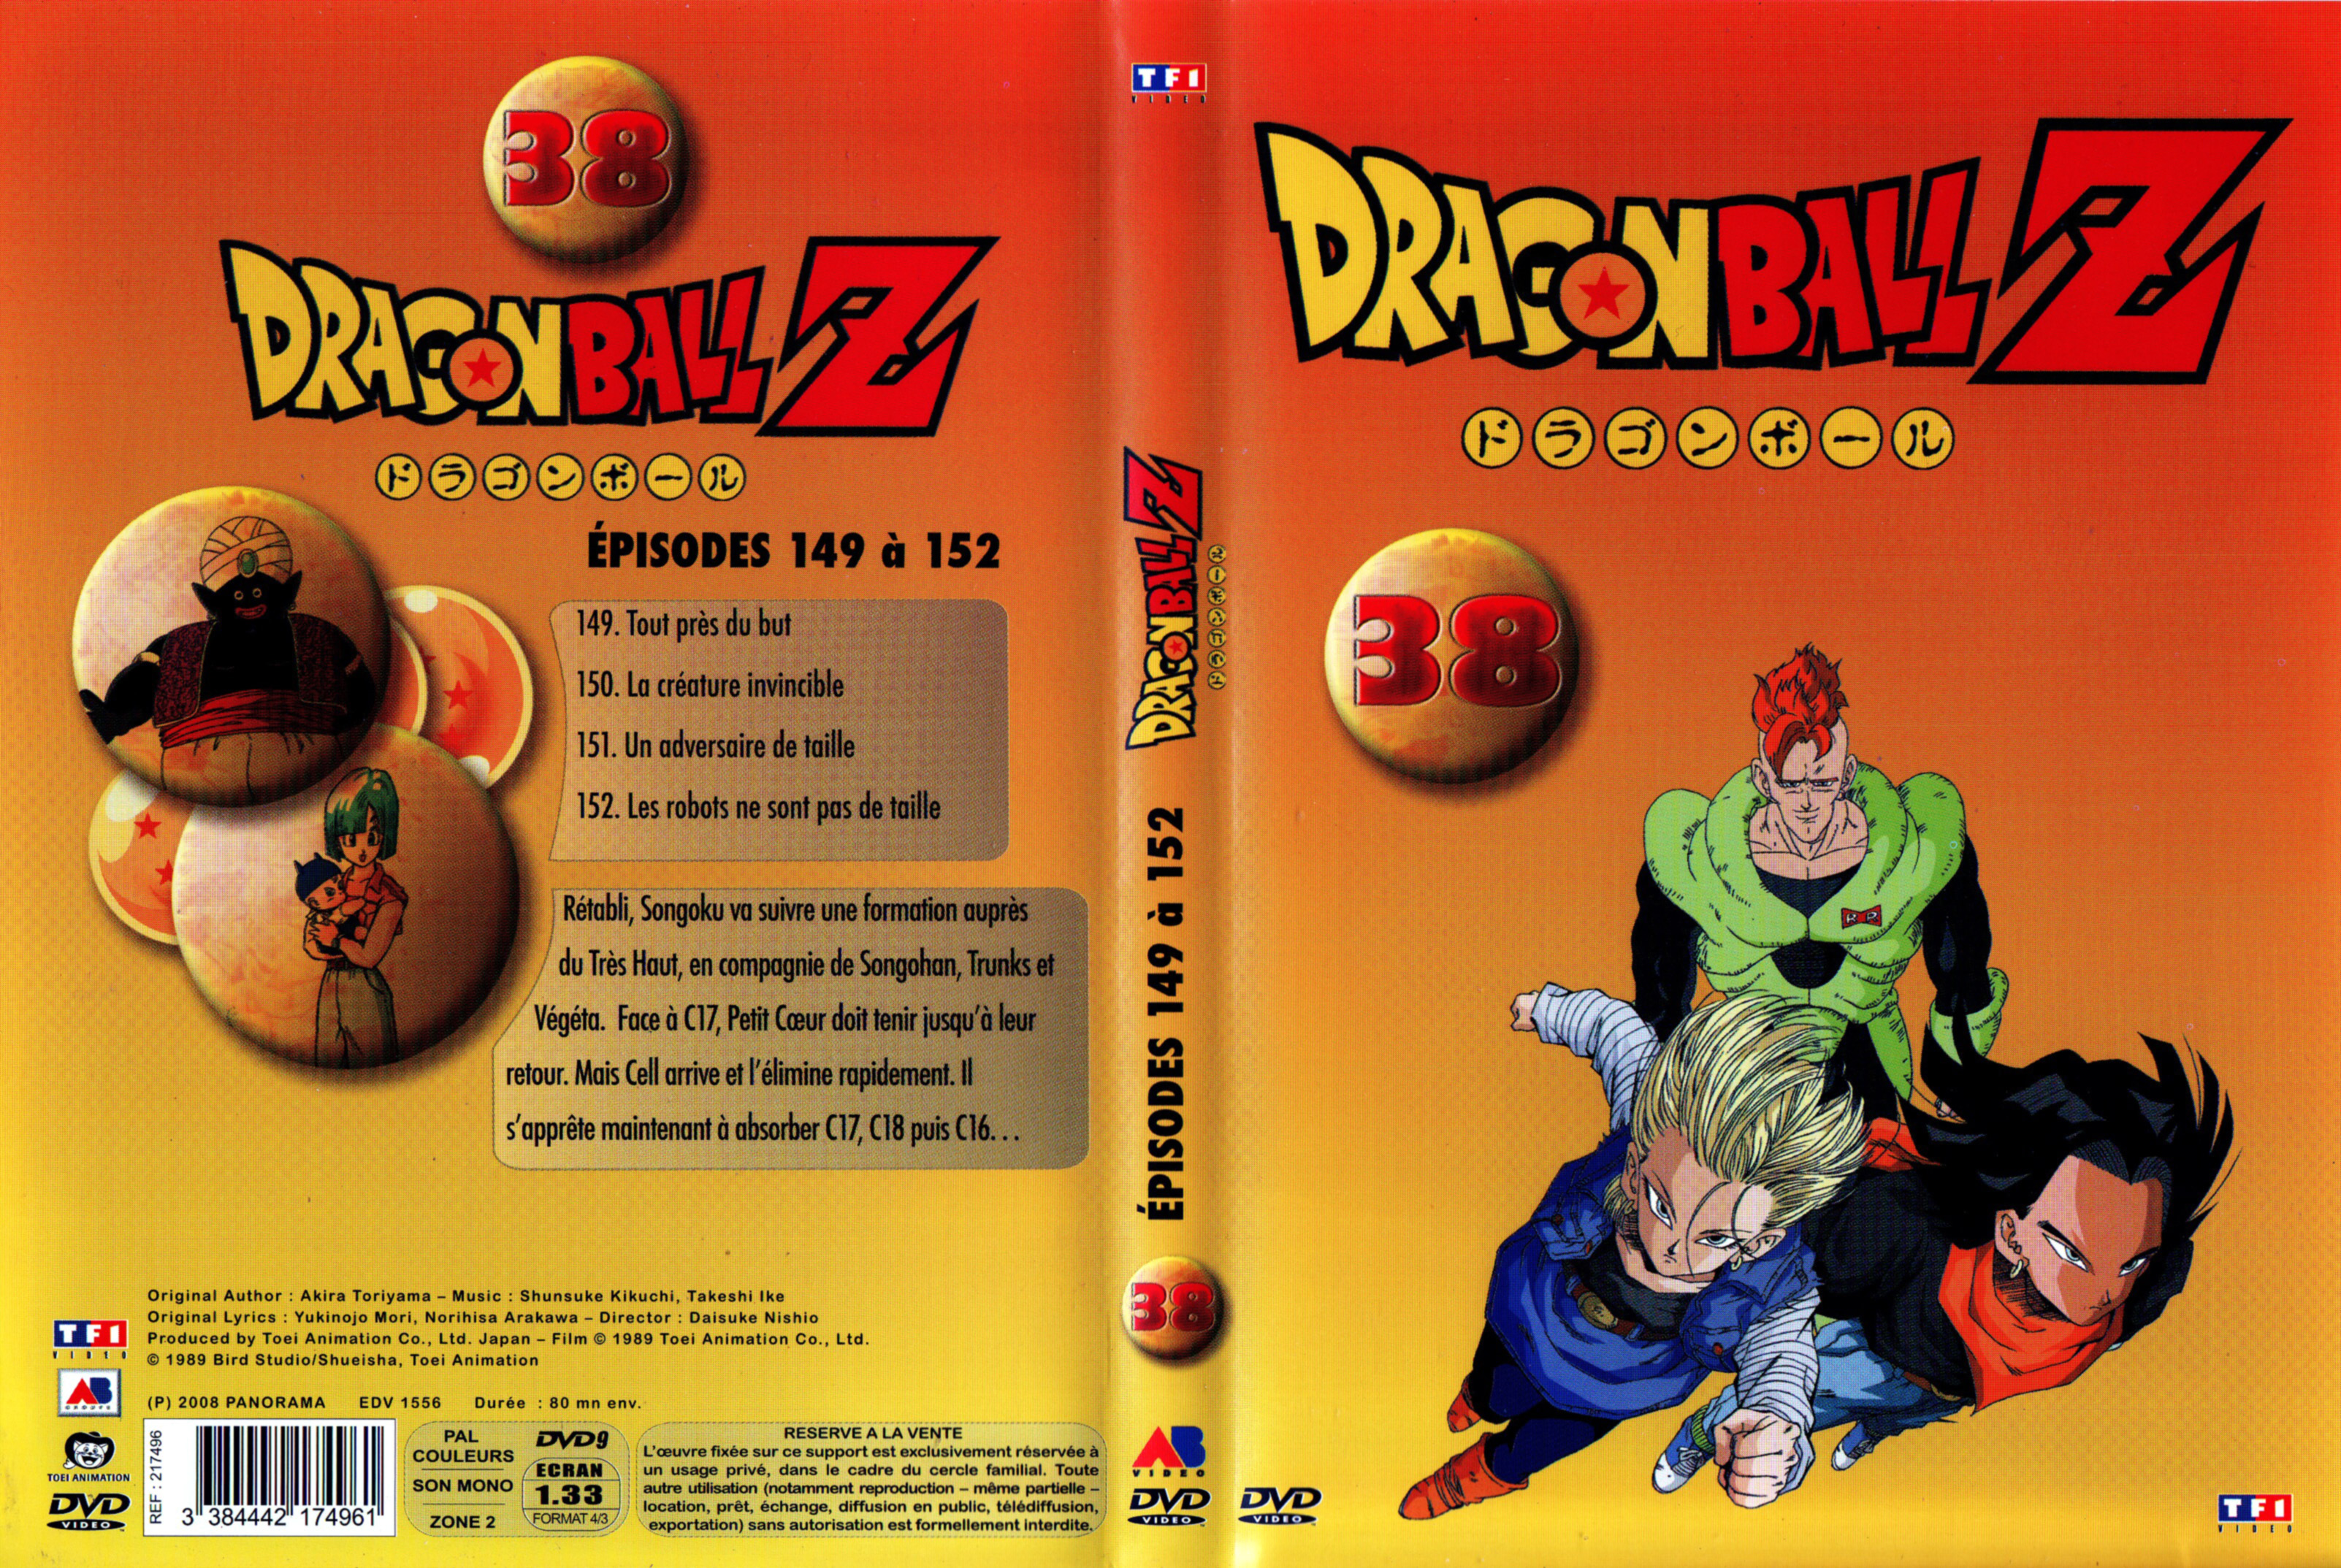 Jaquette DVD Dragon Ball Z vol 38 v2